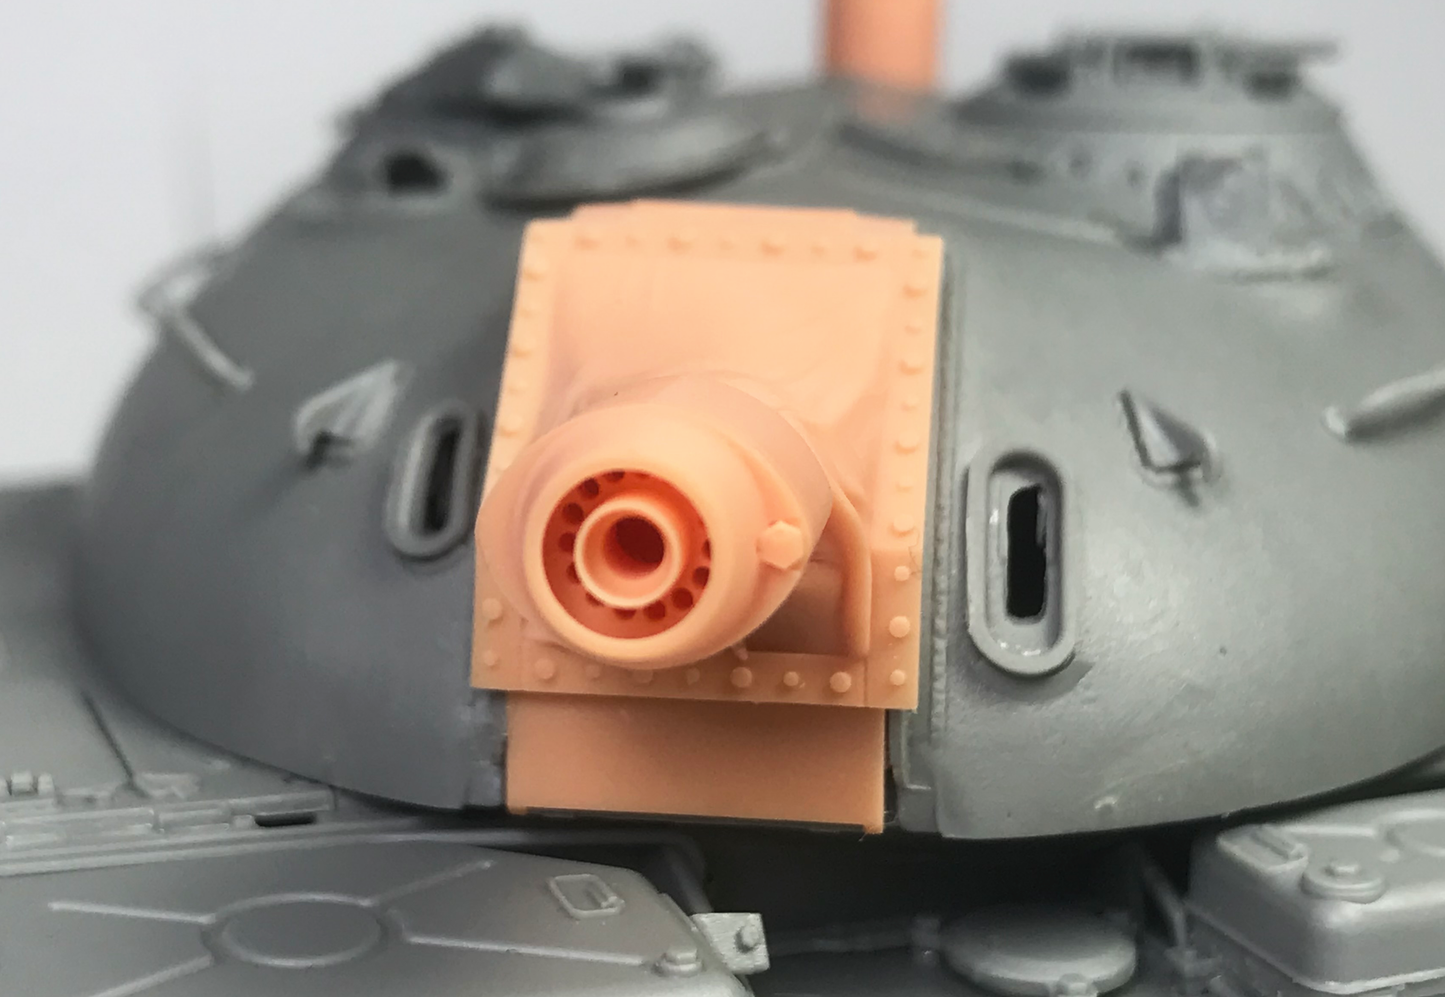 1/35 Object 483 'OT-54' Flame Tank Conversion Kit